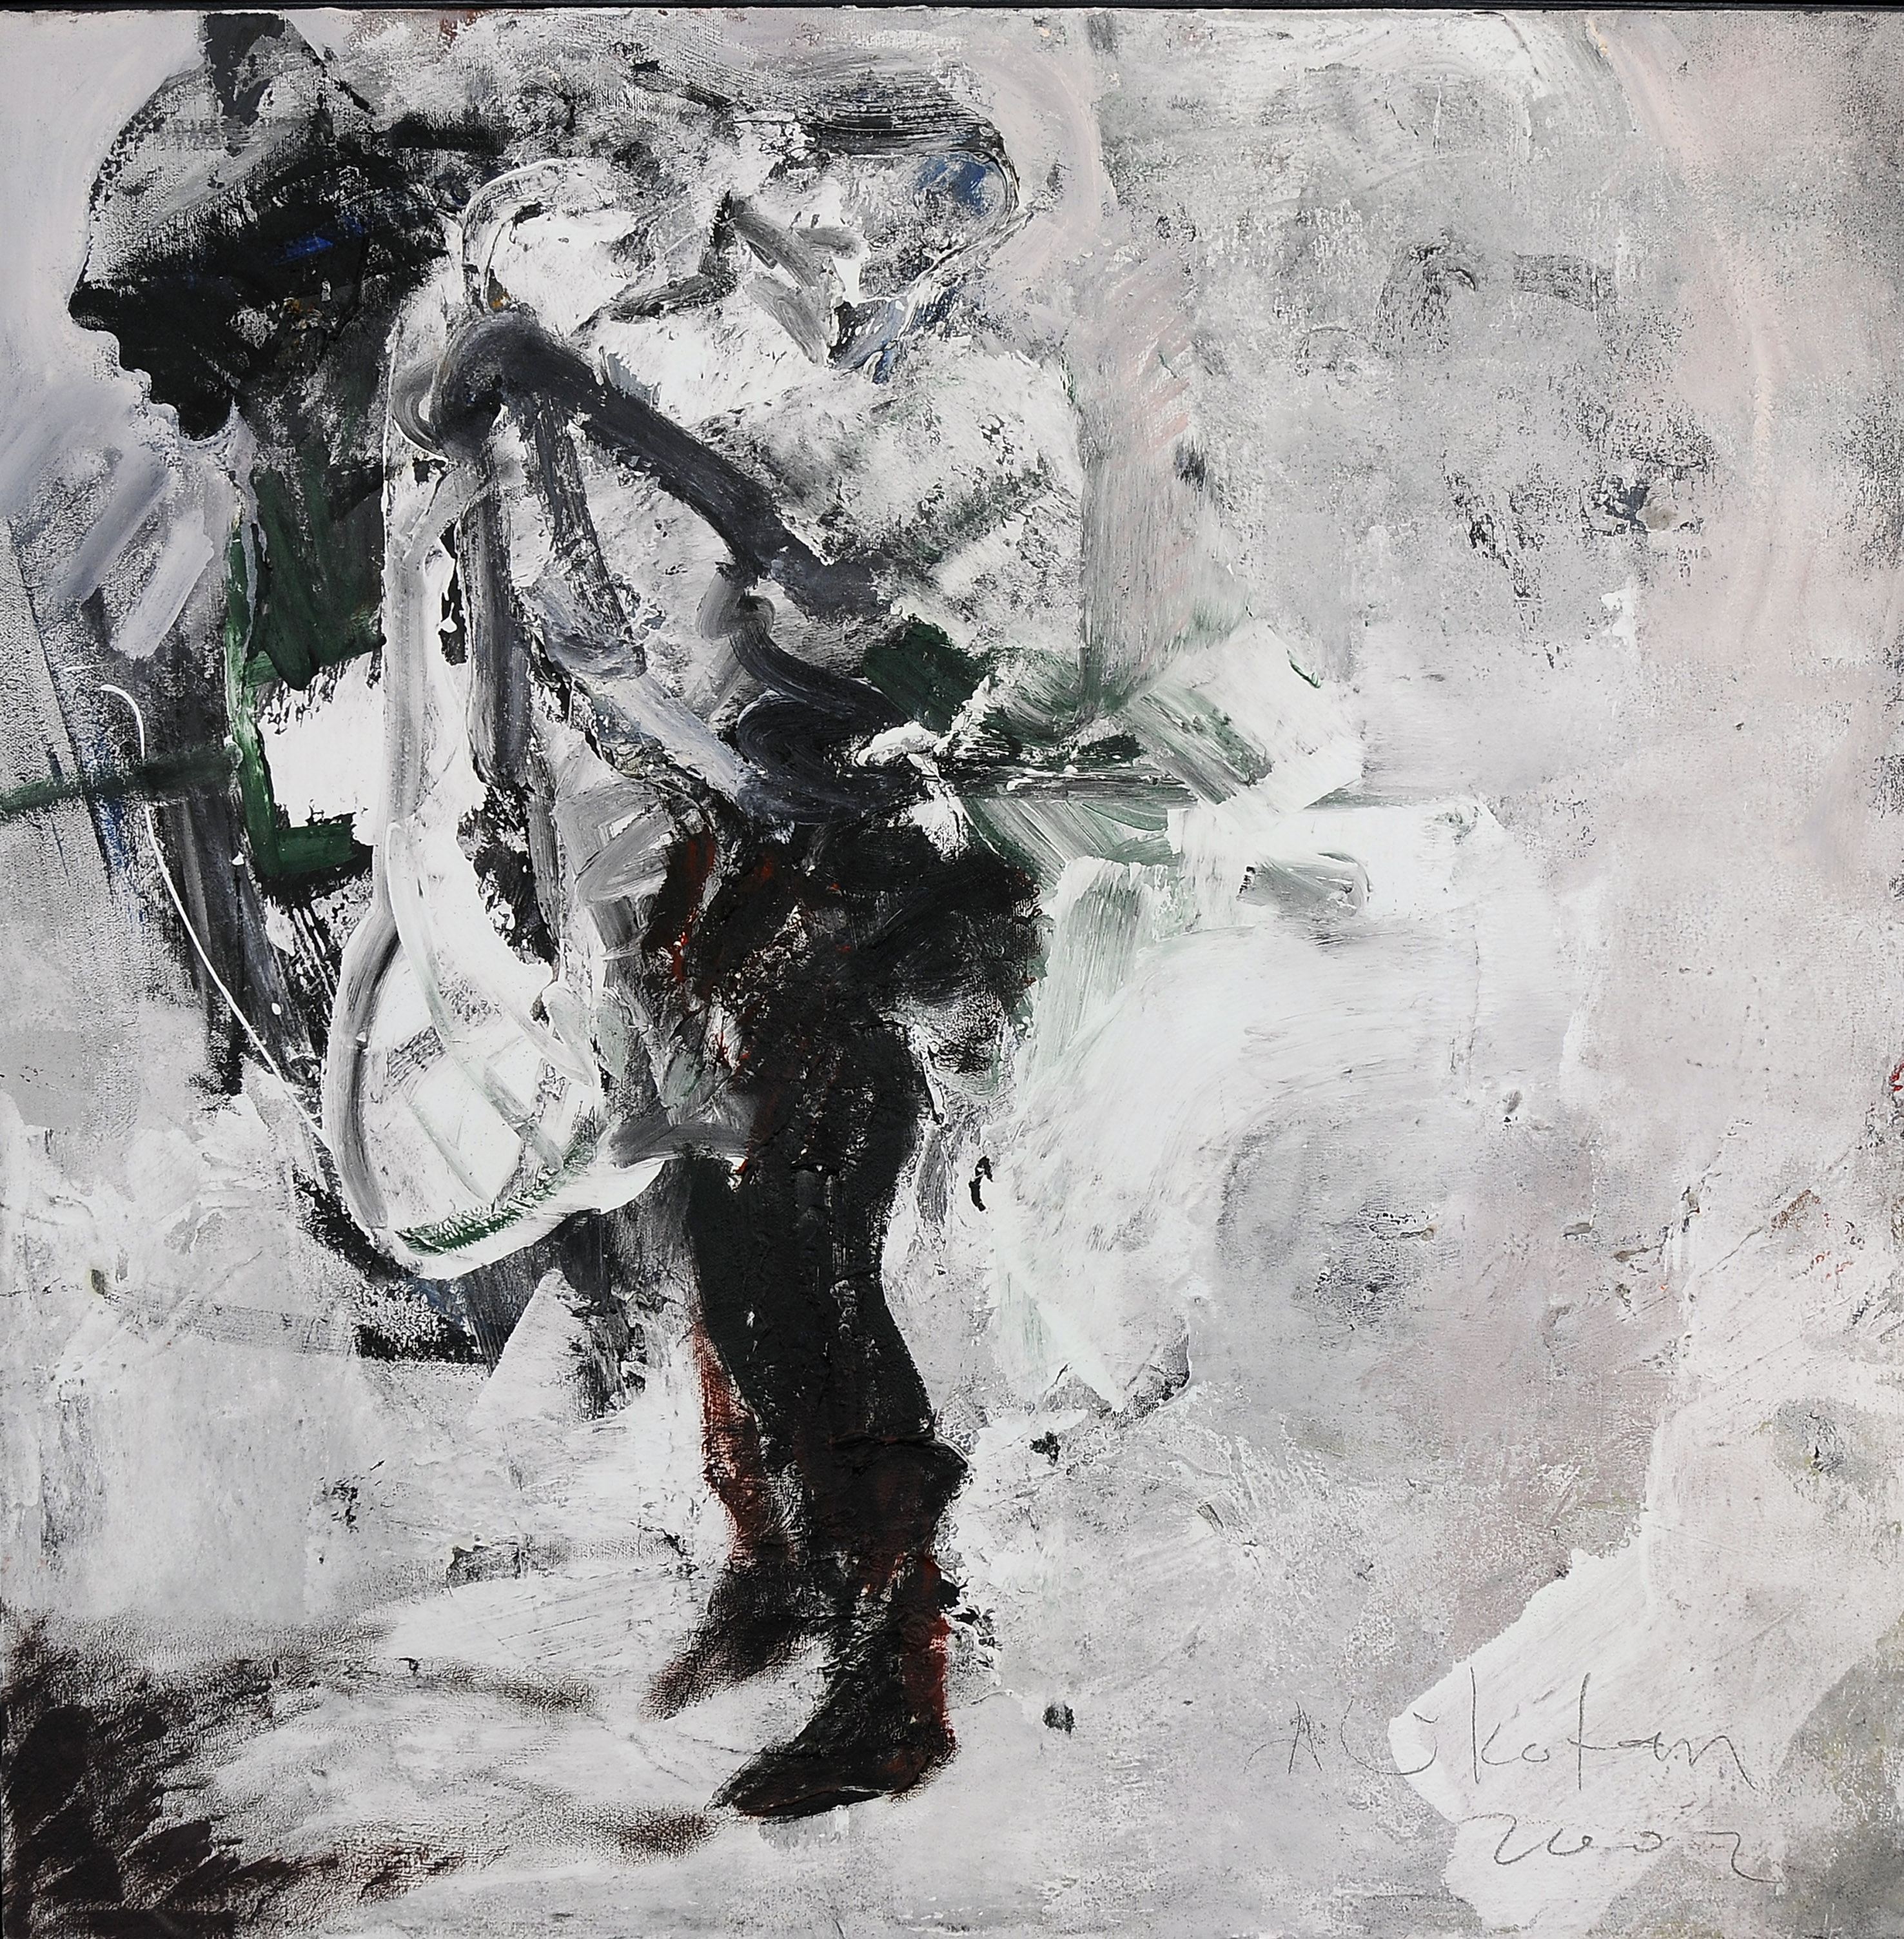  ALİ KOTAN, İsimsiz- Untitled, 2002, Tuval üzerine yağlıboya- Oil on canvas, 75X76 cm